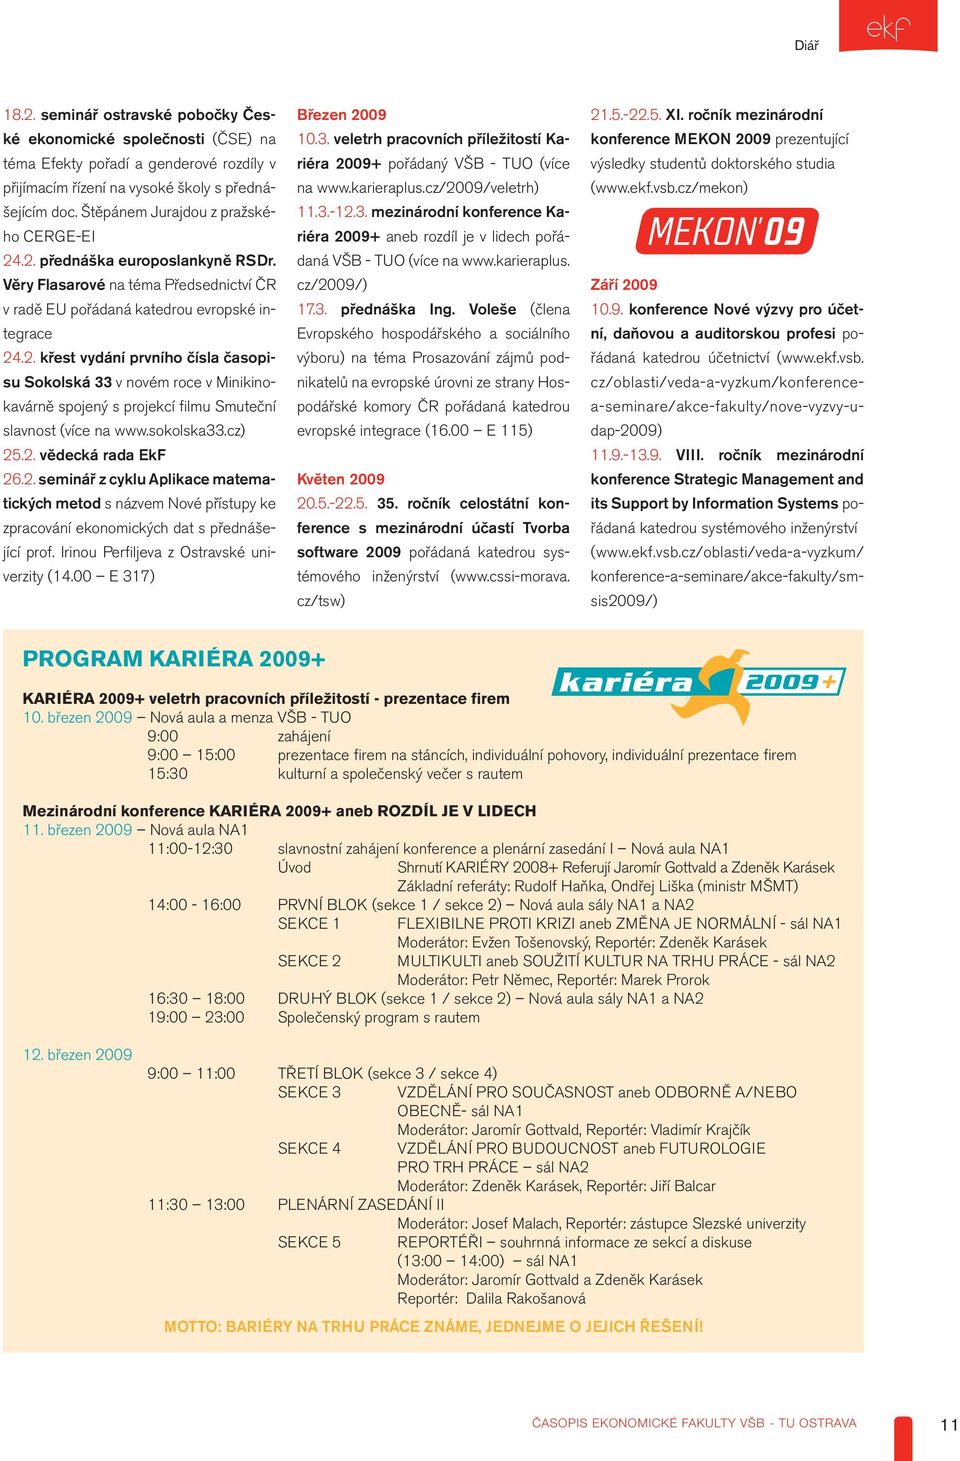 sokolska33.cz) 25.2. vědecká rada EkF 26.2. seminář z cyklu Aplikace matematických metod s názvem Nové přístupy ke zpracování ekonomických dat s přednášející prof.